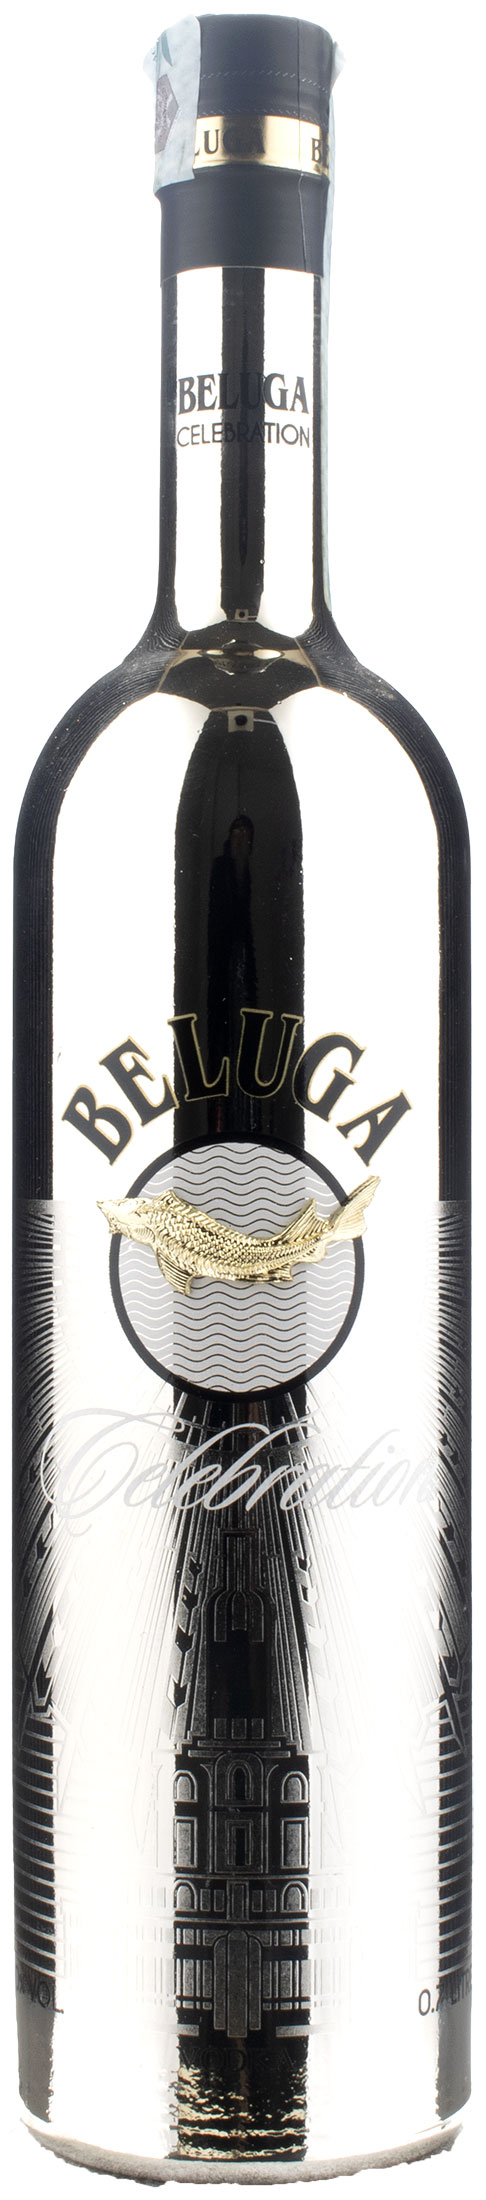 Beluga Vodka Celebration 0,7L